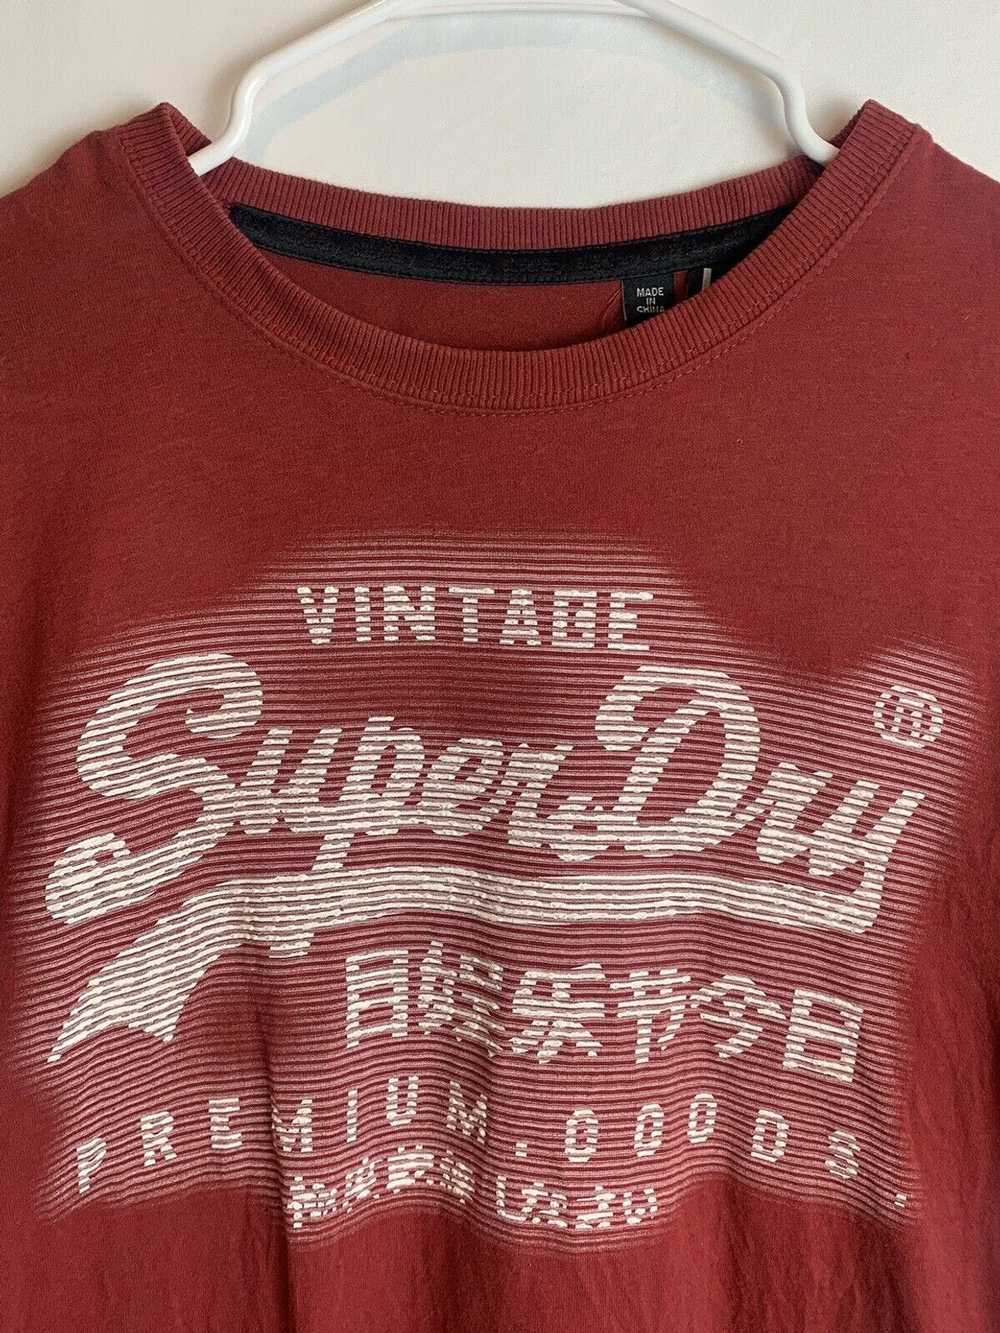 Other Vintage SuperDry Men’s T-Shirt Size Large C… - image 2